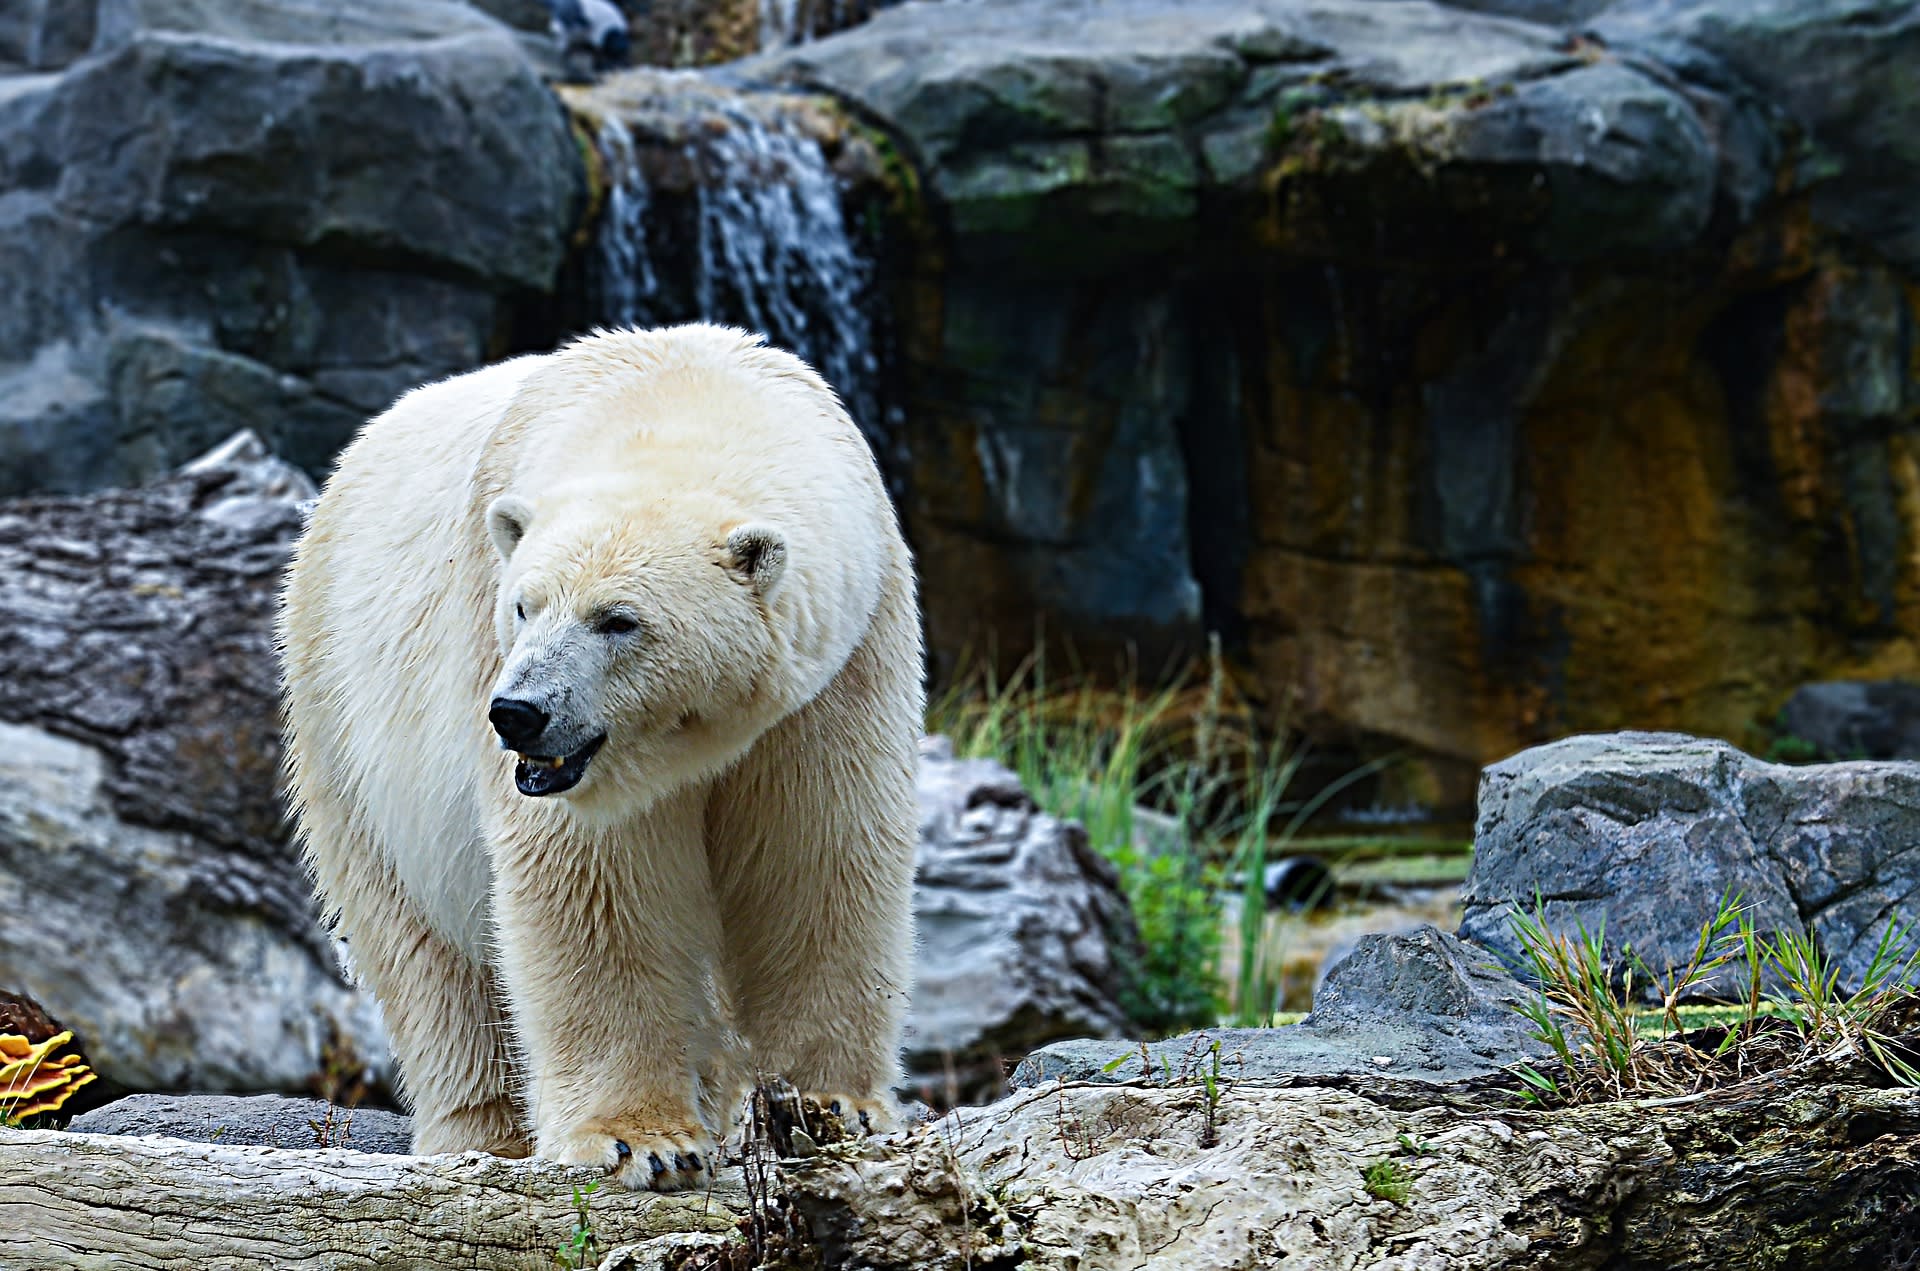 Na lední medvědy často narazíme v zoo, a to i v takových geografických podmínkách, které pro ně nejsou přirozené